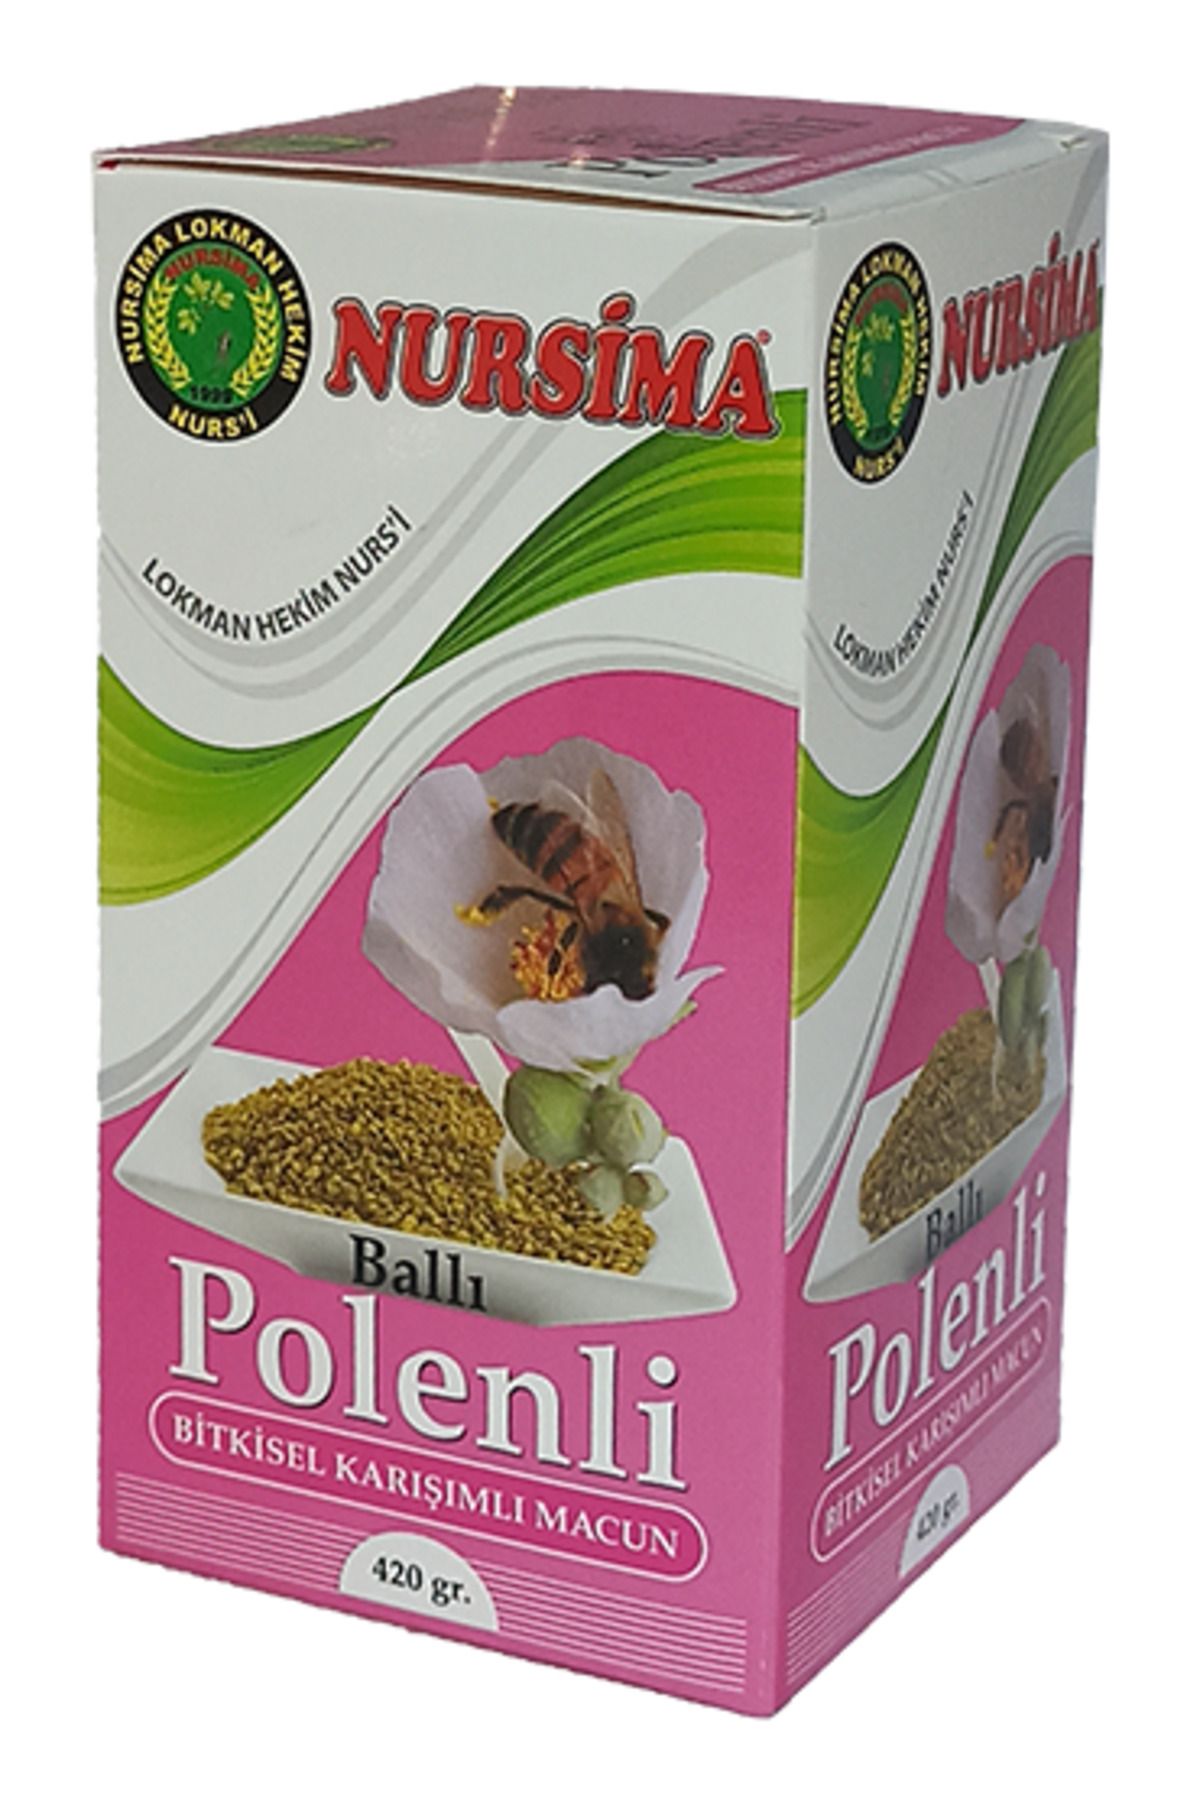 Nursima Ballı Polenli Bitkisel Karışımlı Macun 420 gr